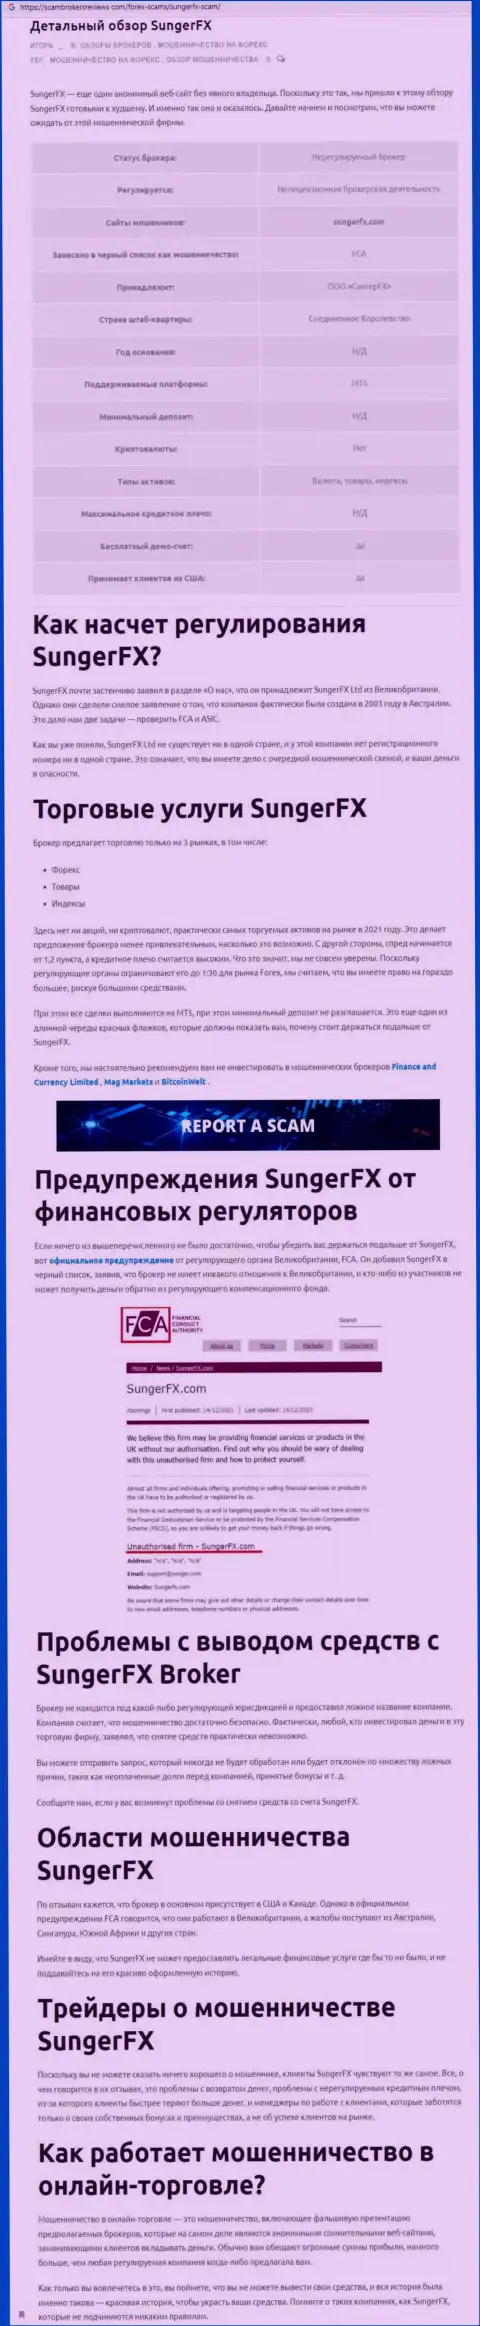 Автор обзора рассказывает об мошенничестве, которое происходит в SungerFX